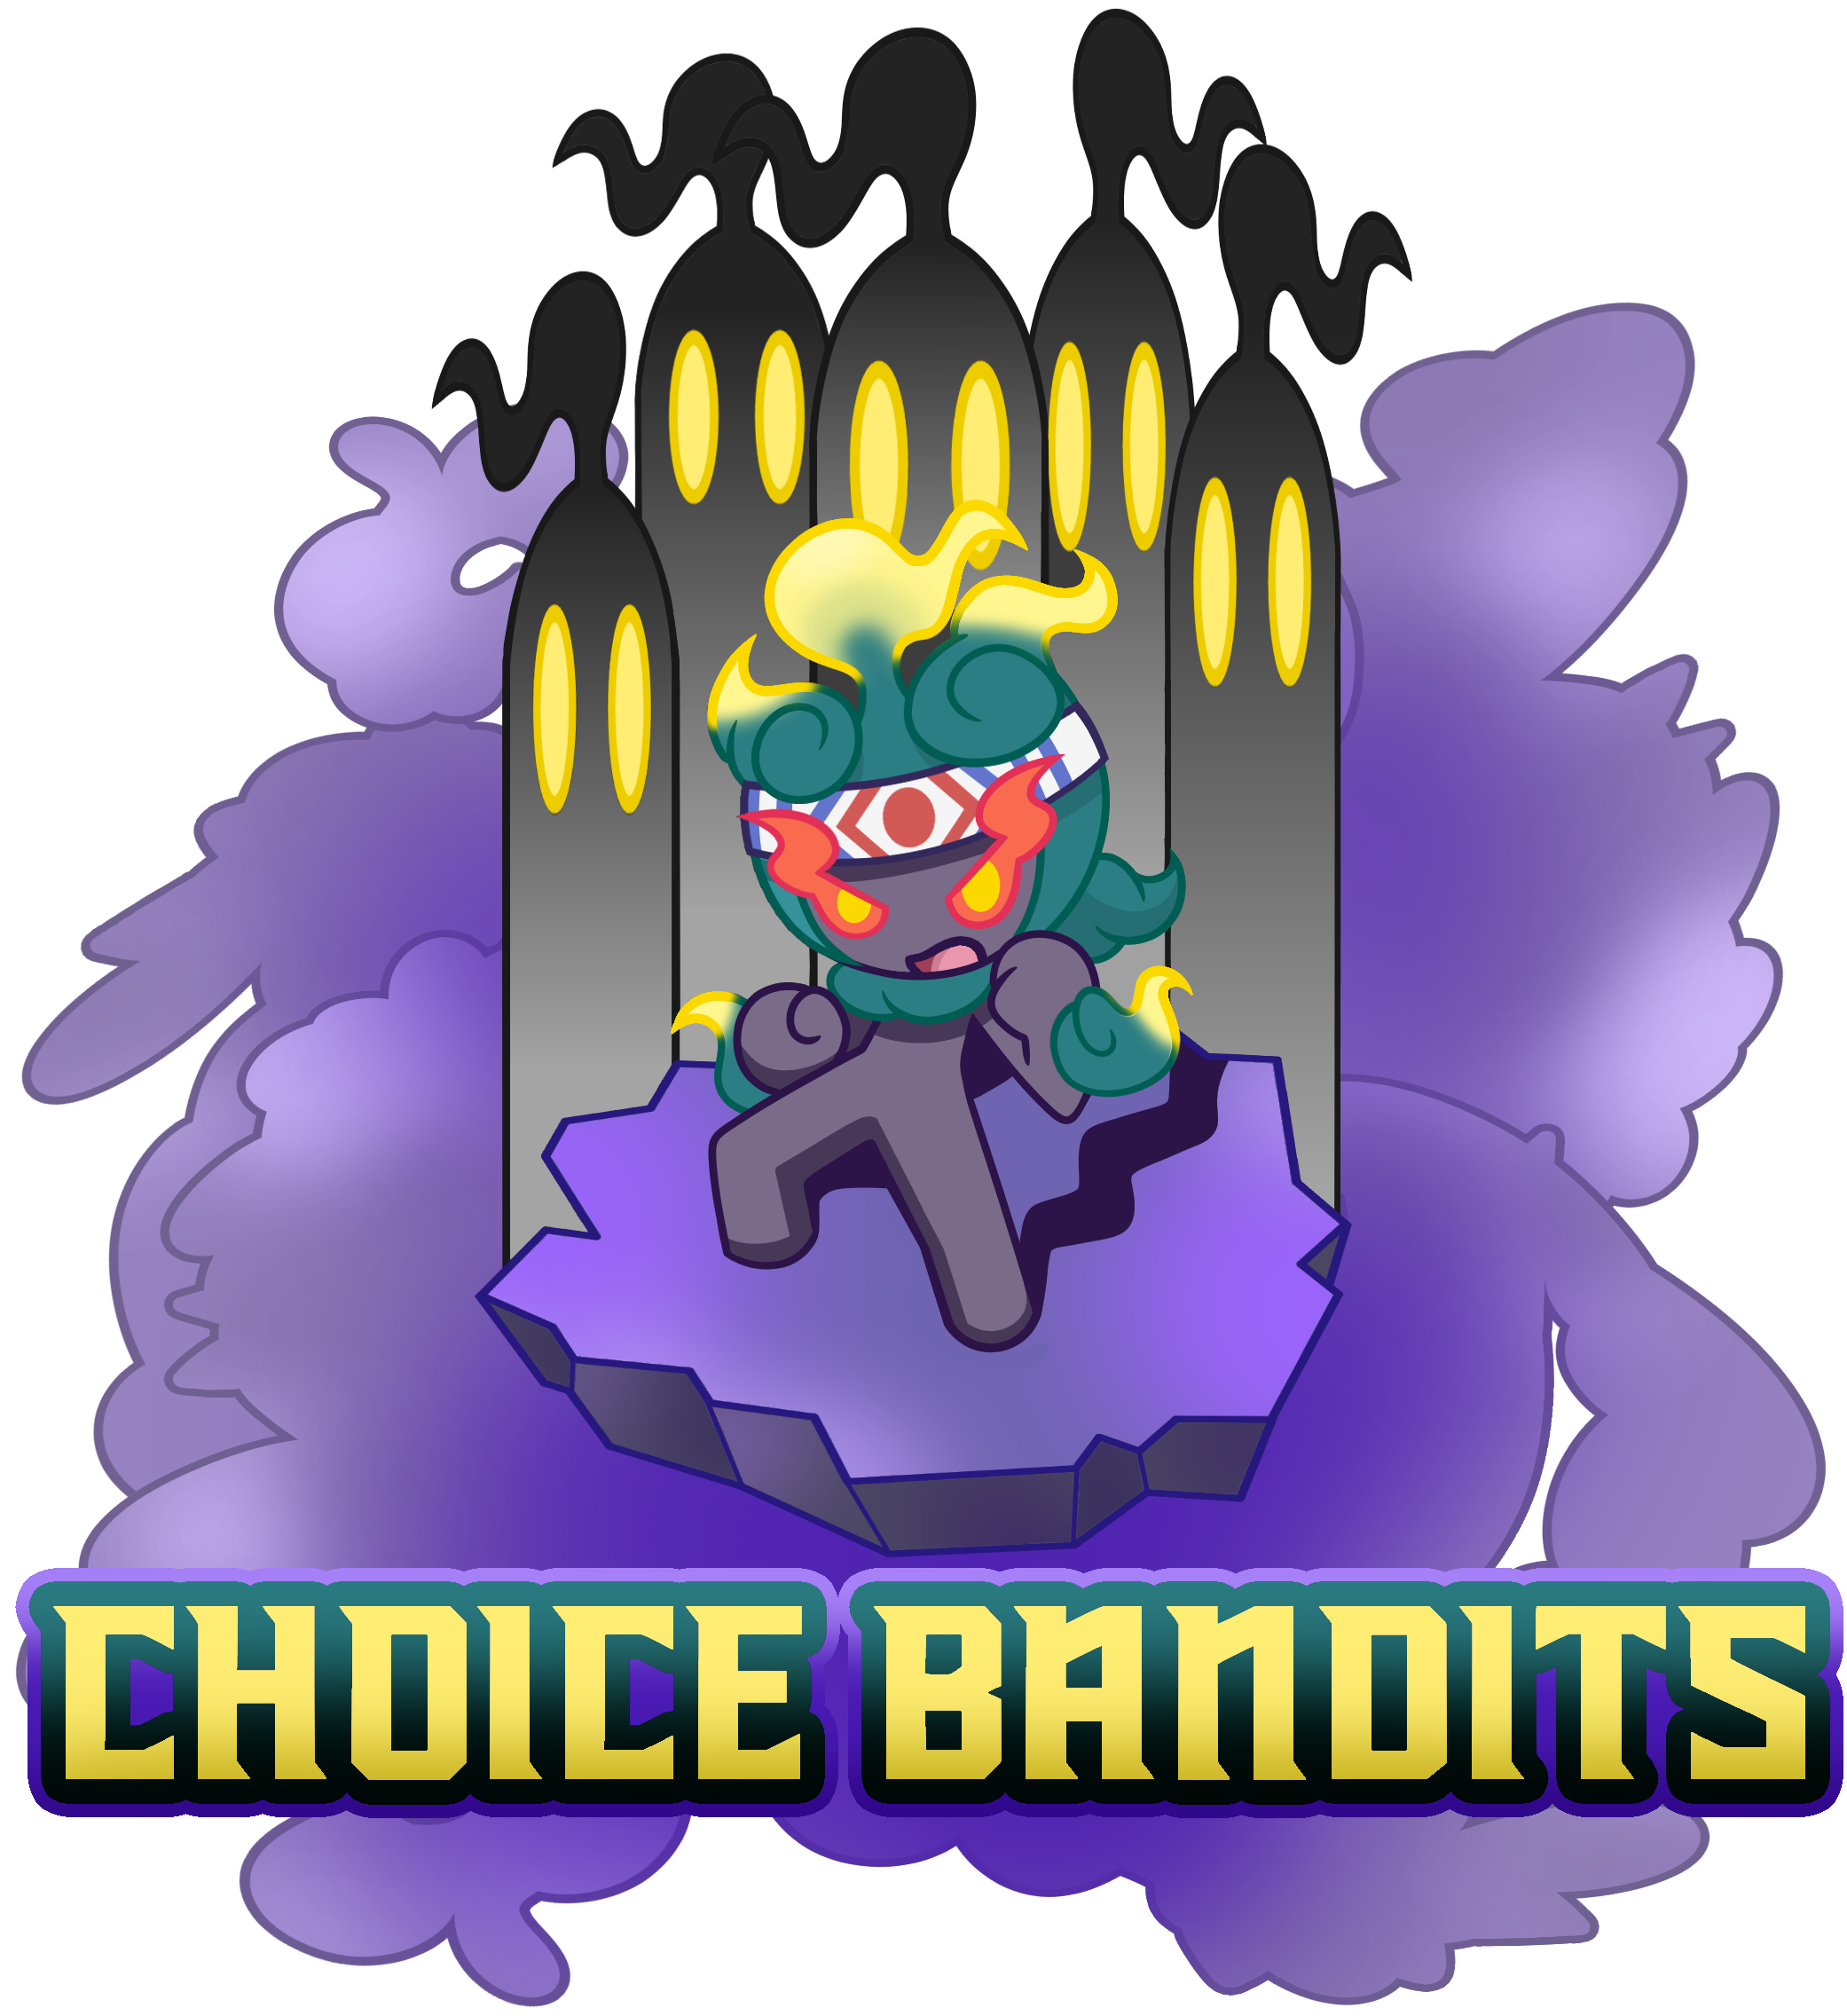 Choice bandit.png